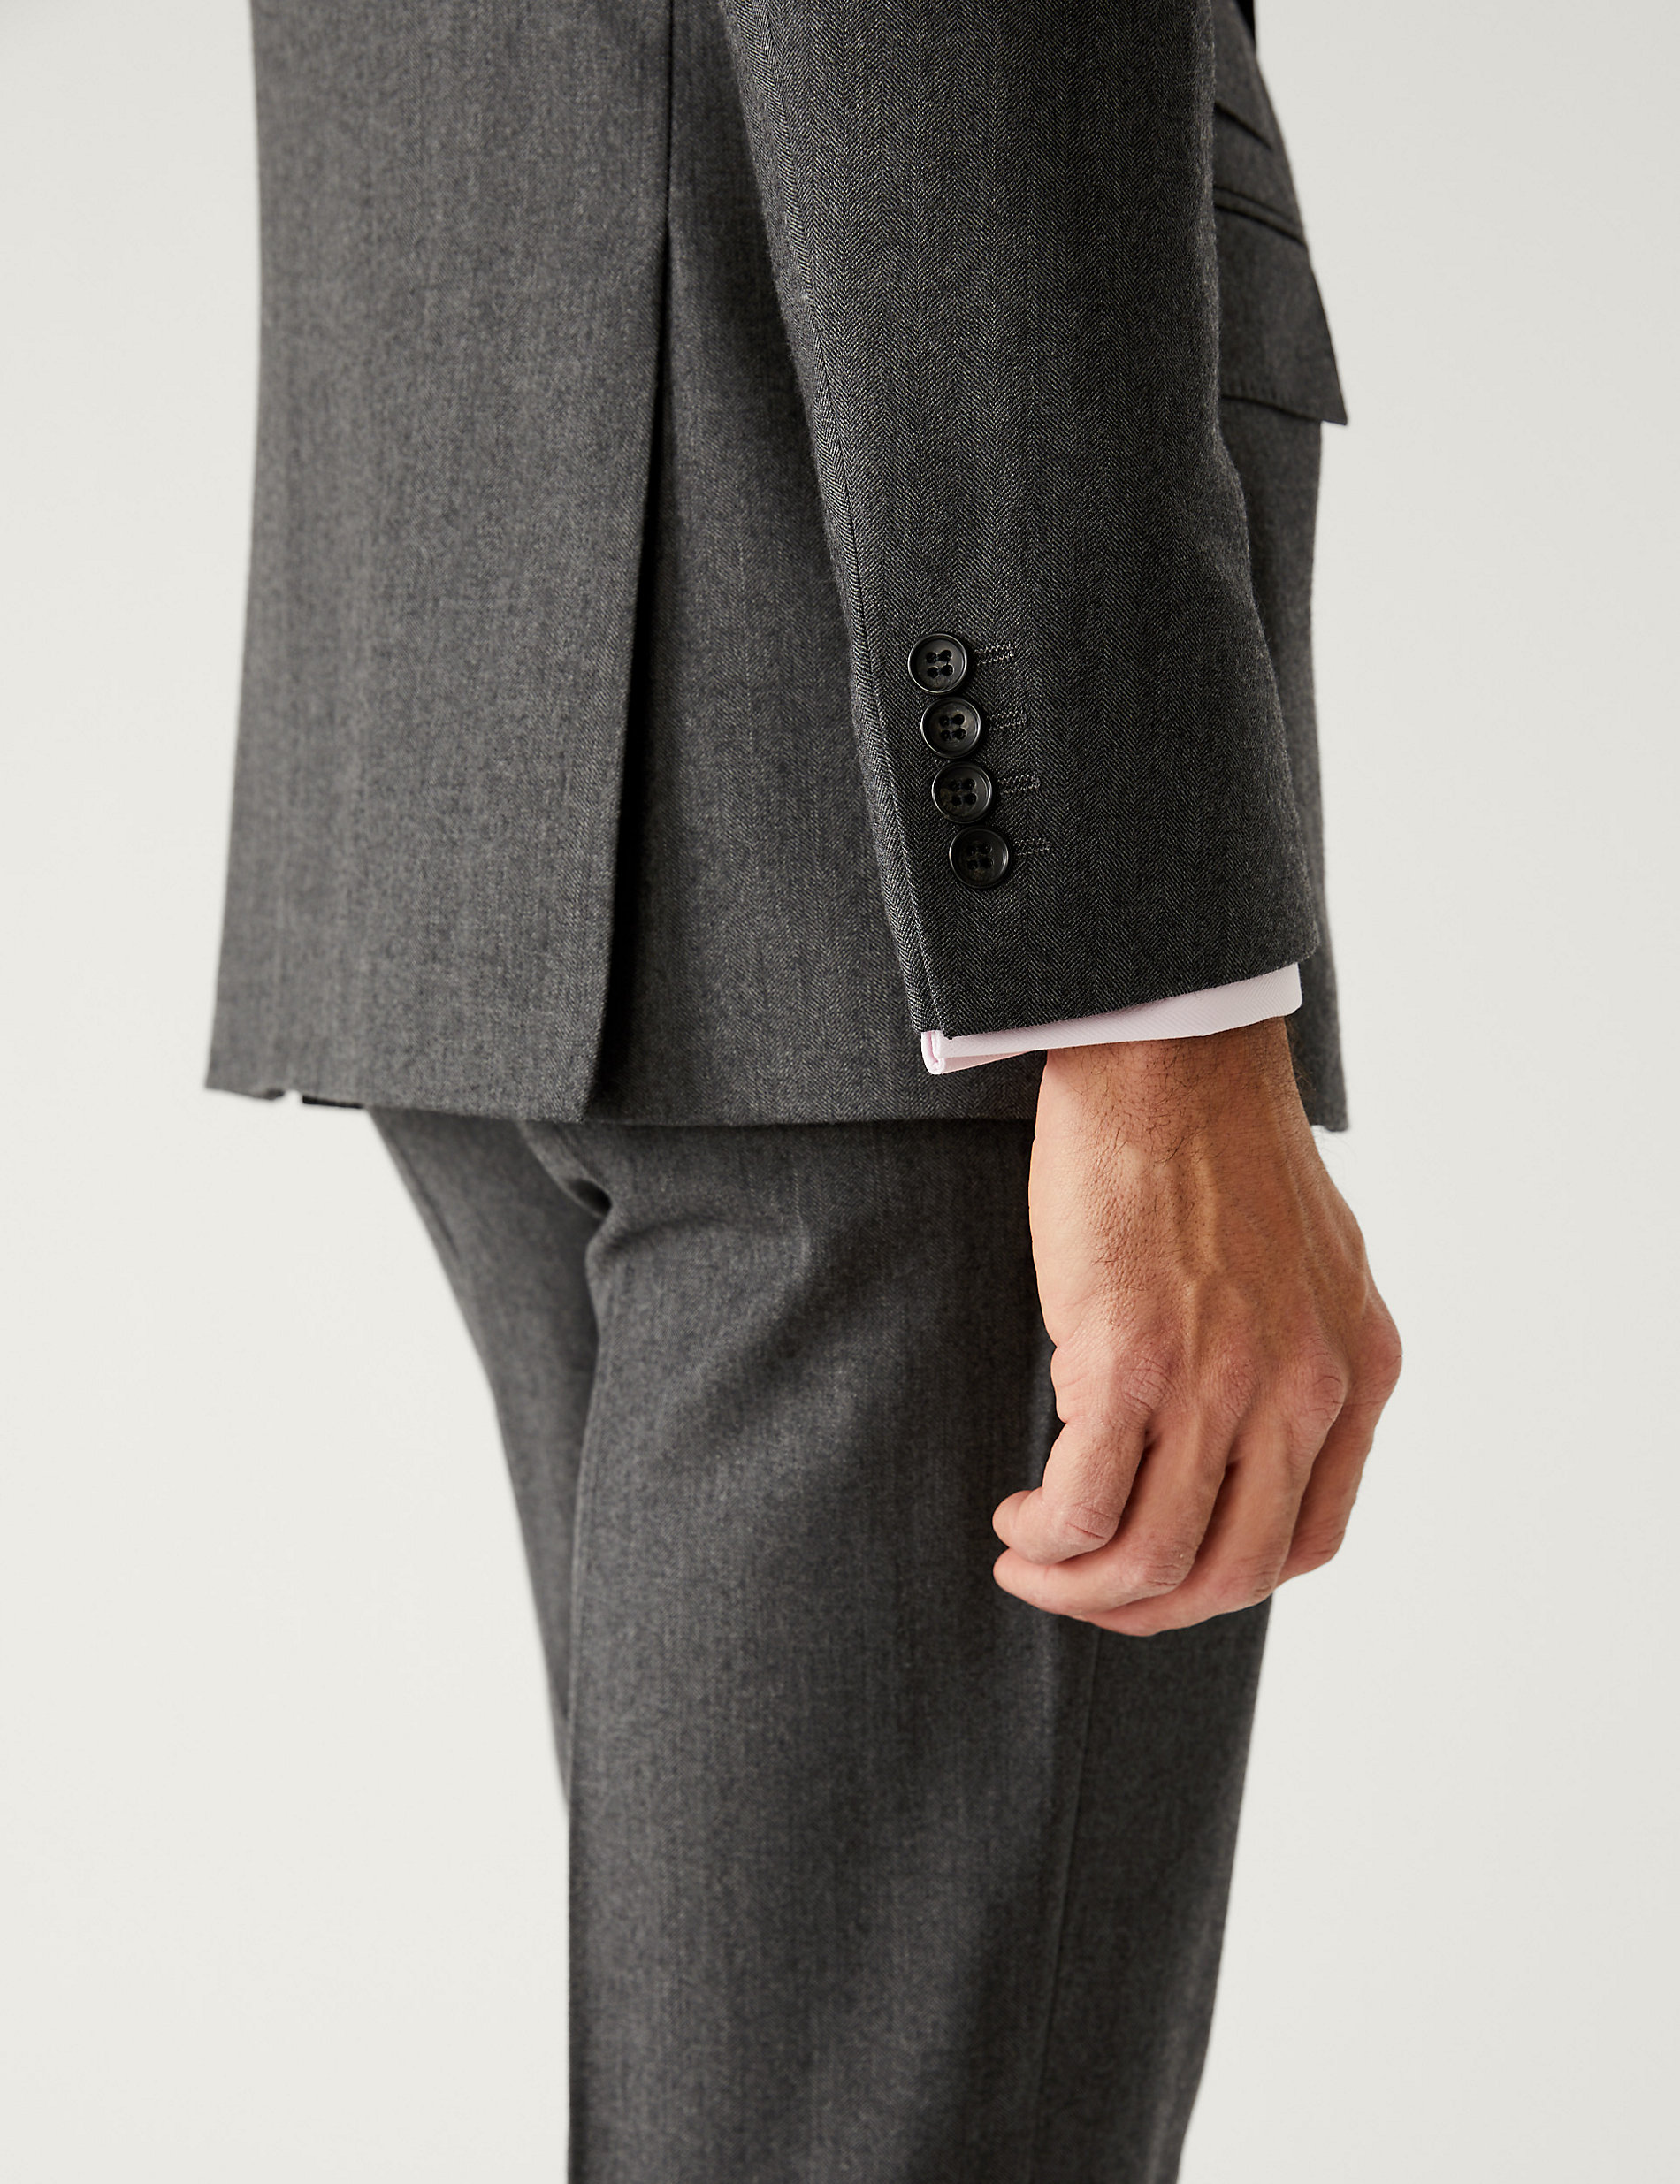 Veste de costume coupe standard 100&nbsp;% laine à motif chevrons